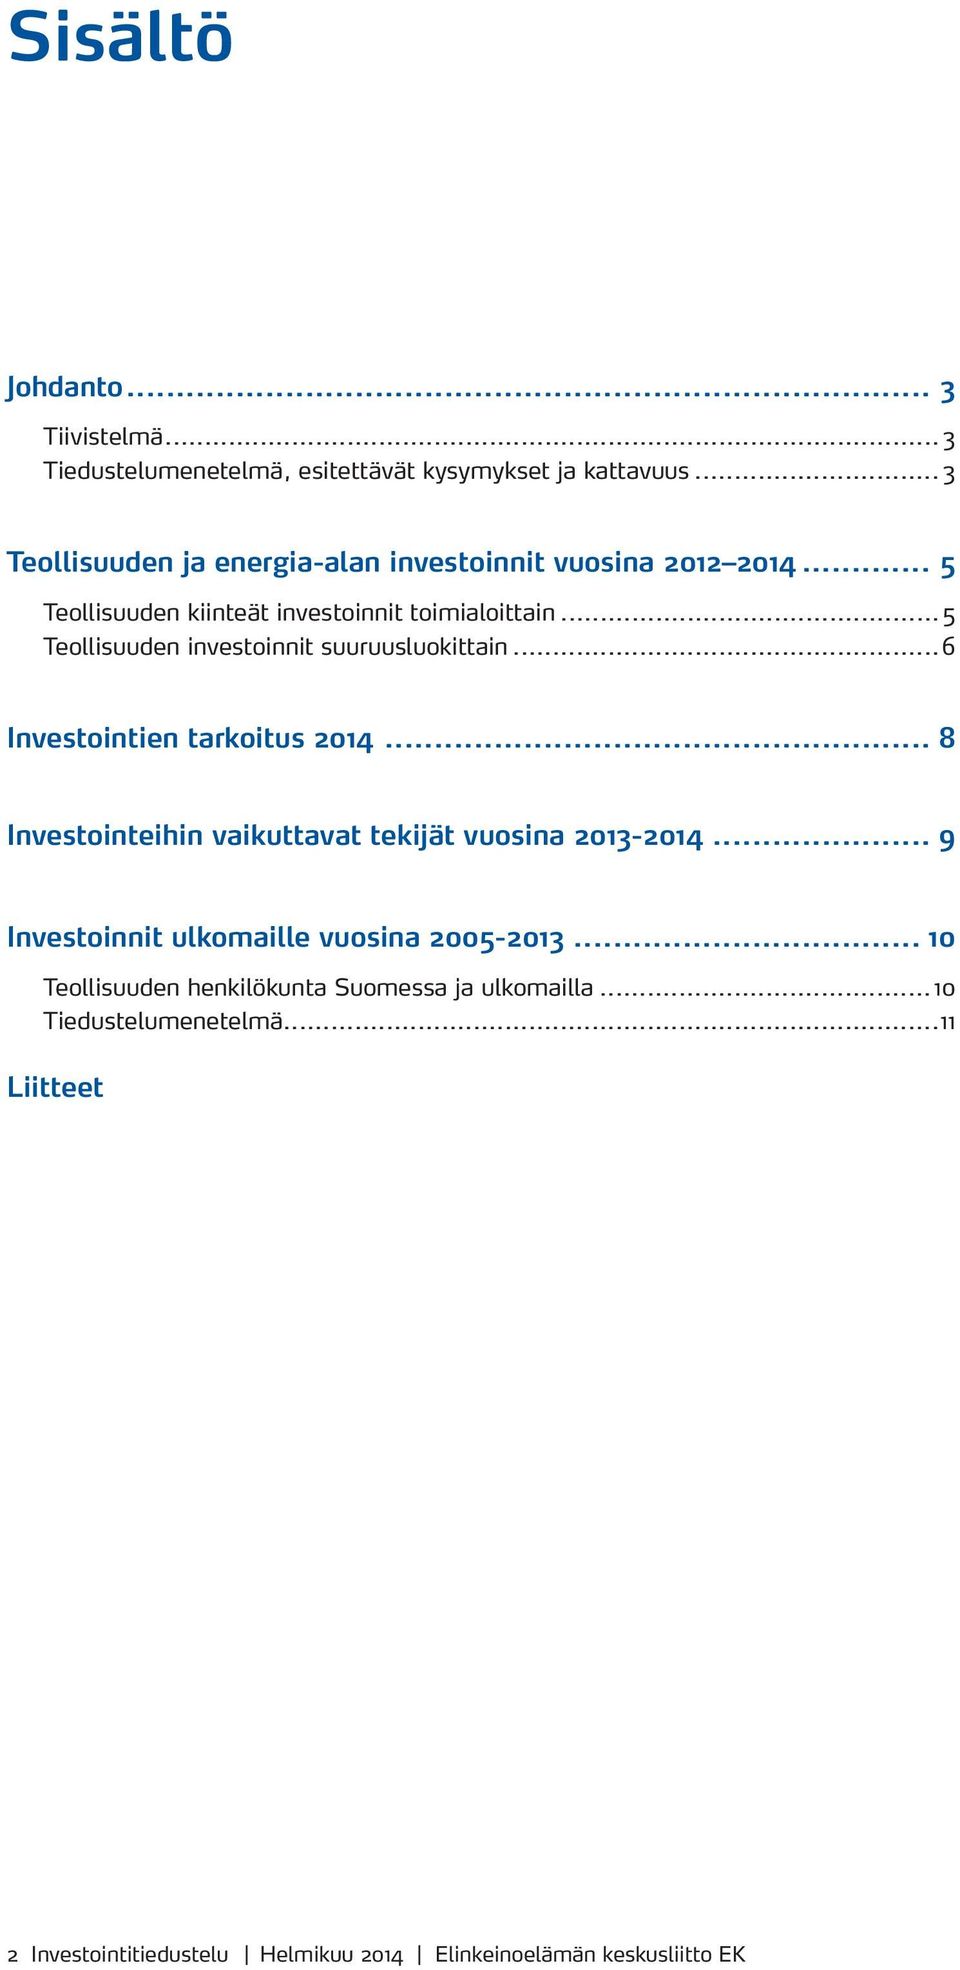 .. 5 Teollisuuden investoinnit suuruusluokittain...6 Investointien tarkoitus 2014... 8 Investointeihin vaikuttavat tekijät vuosina 2013-2014.